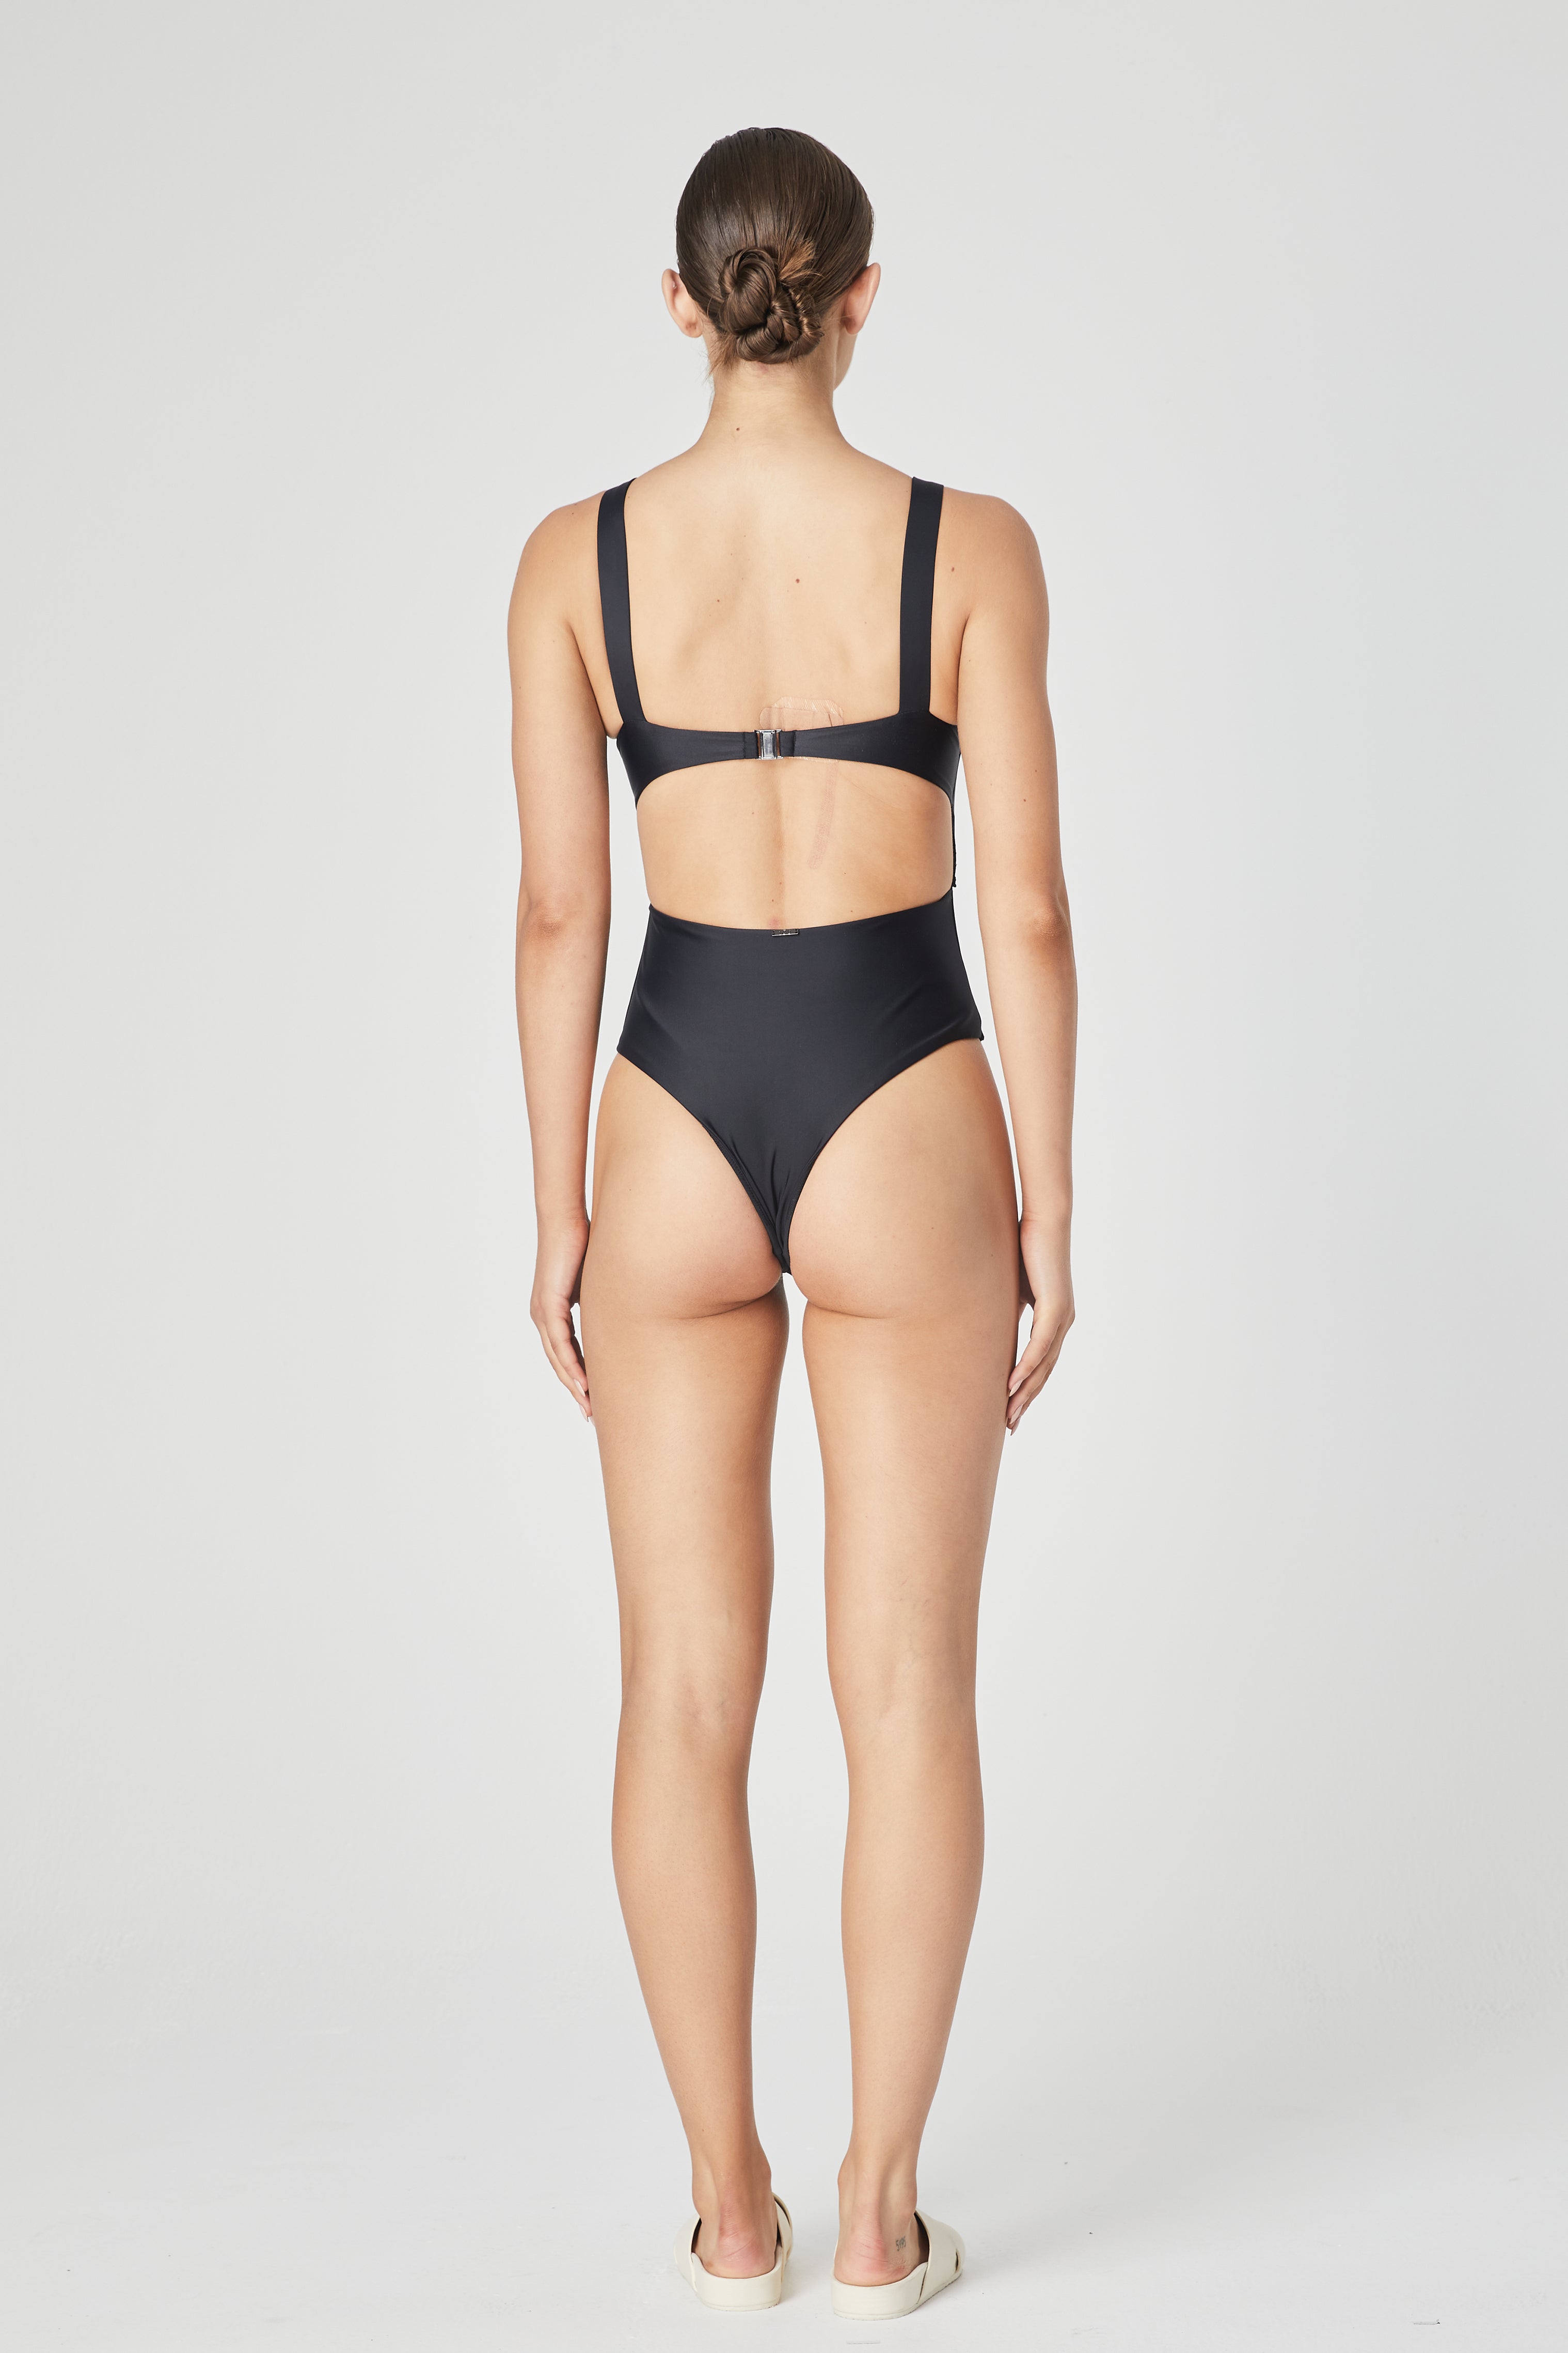 Mahé Cutout Swimsuit - Black - 1Ō8 SPORTIF